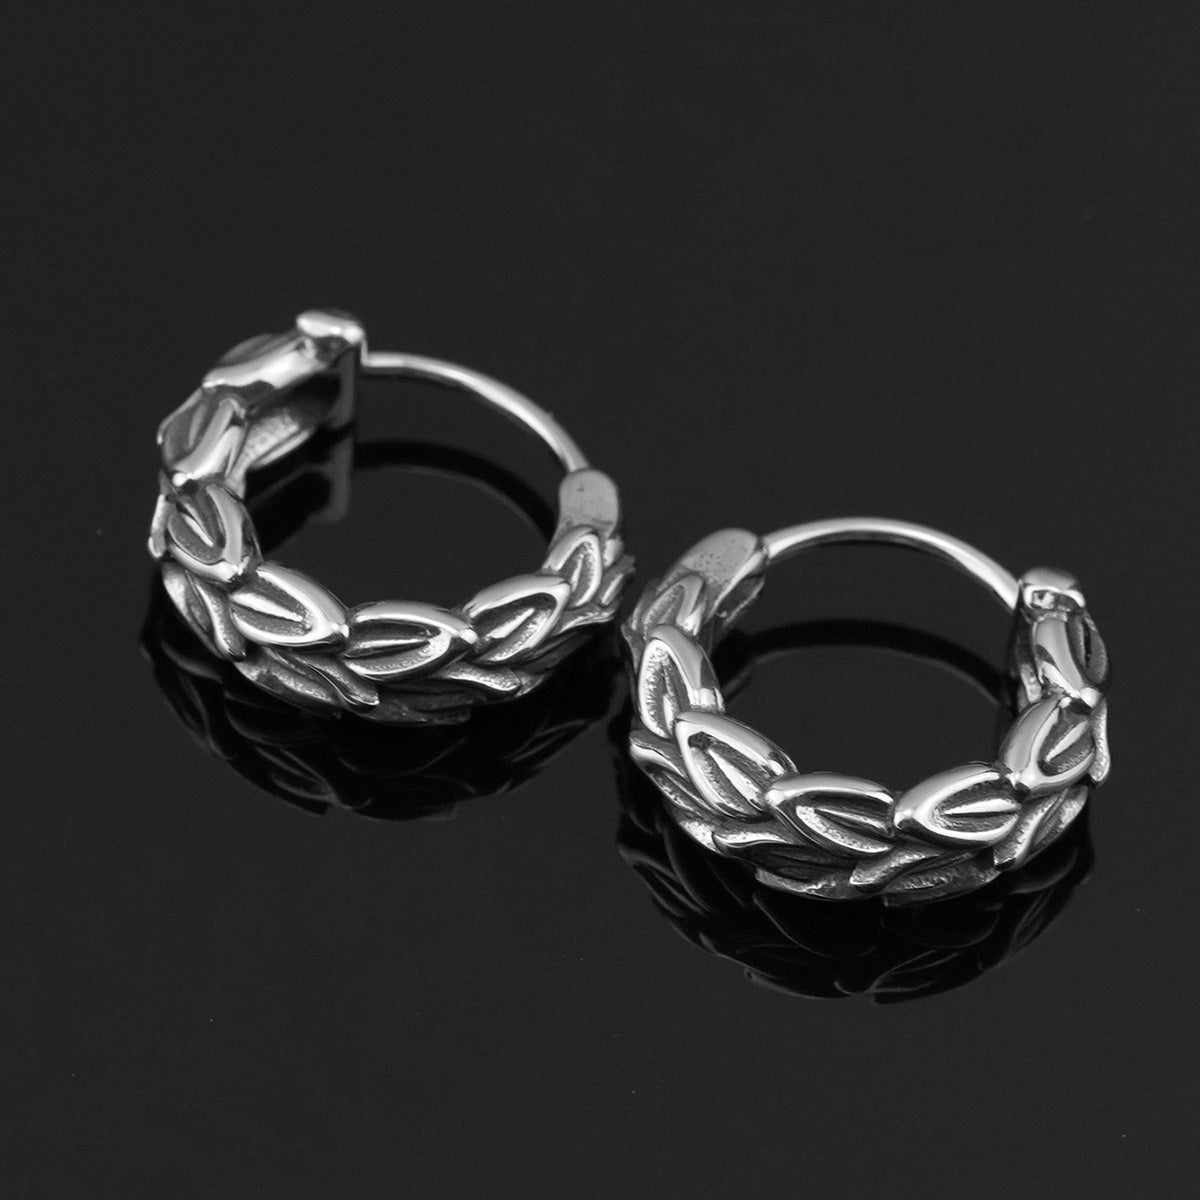 Minimalist Jewelry Earrings Stainless Steel